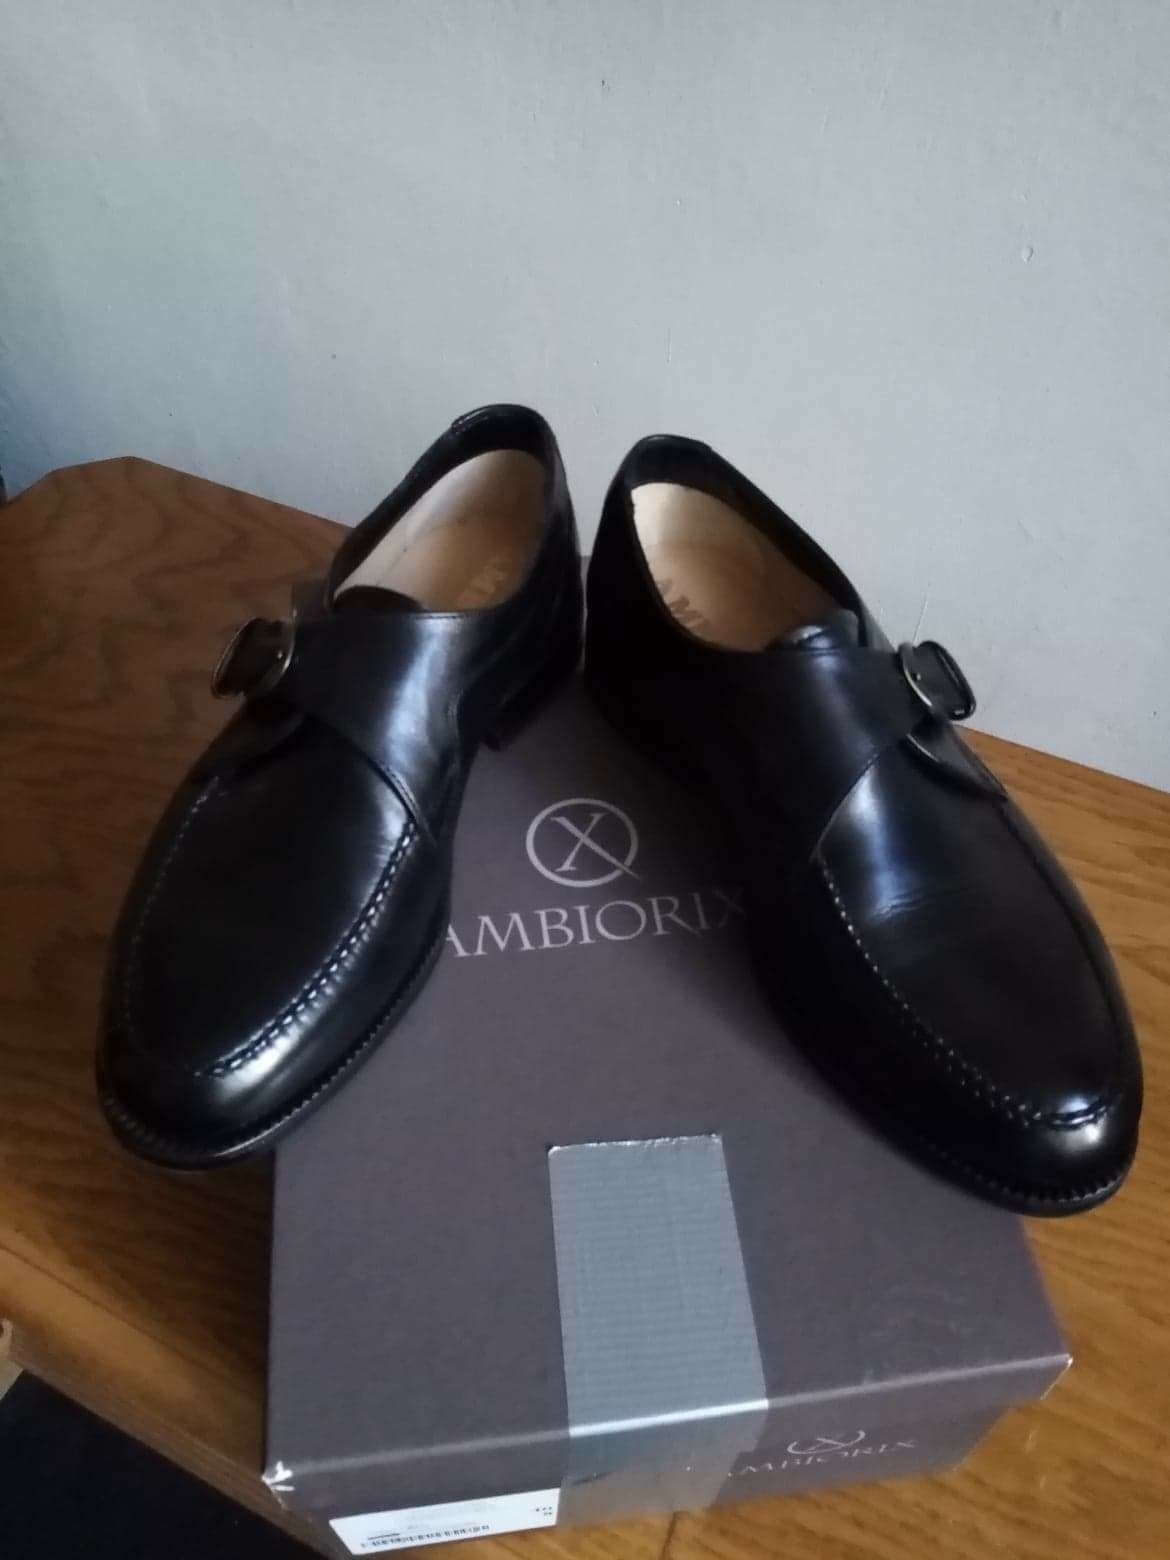 Pantofi piele lux marcă AMBIORIX noi ,culoare negru 40, lucrati manual